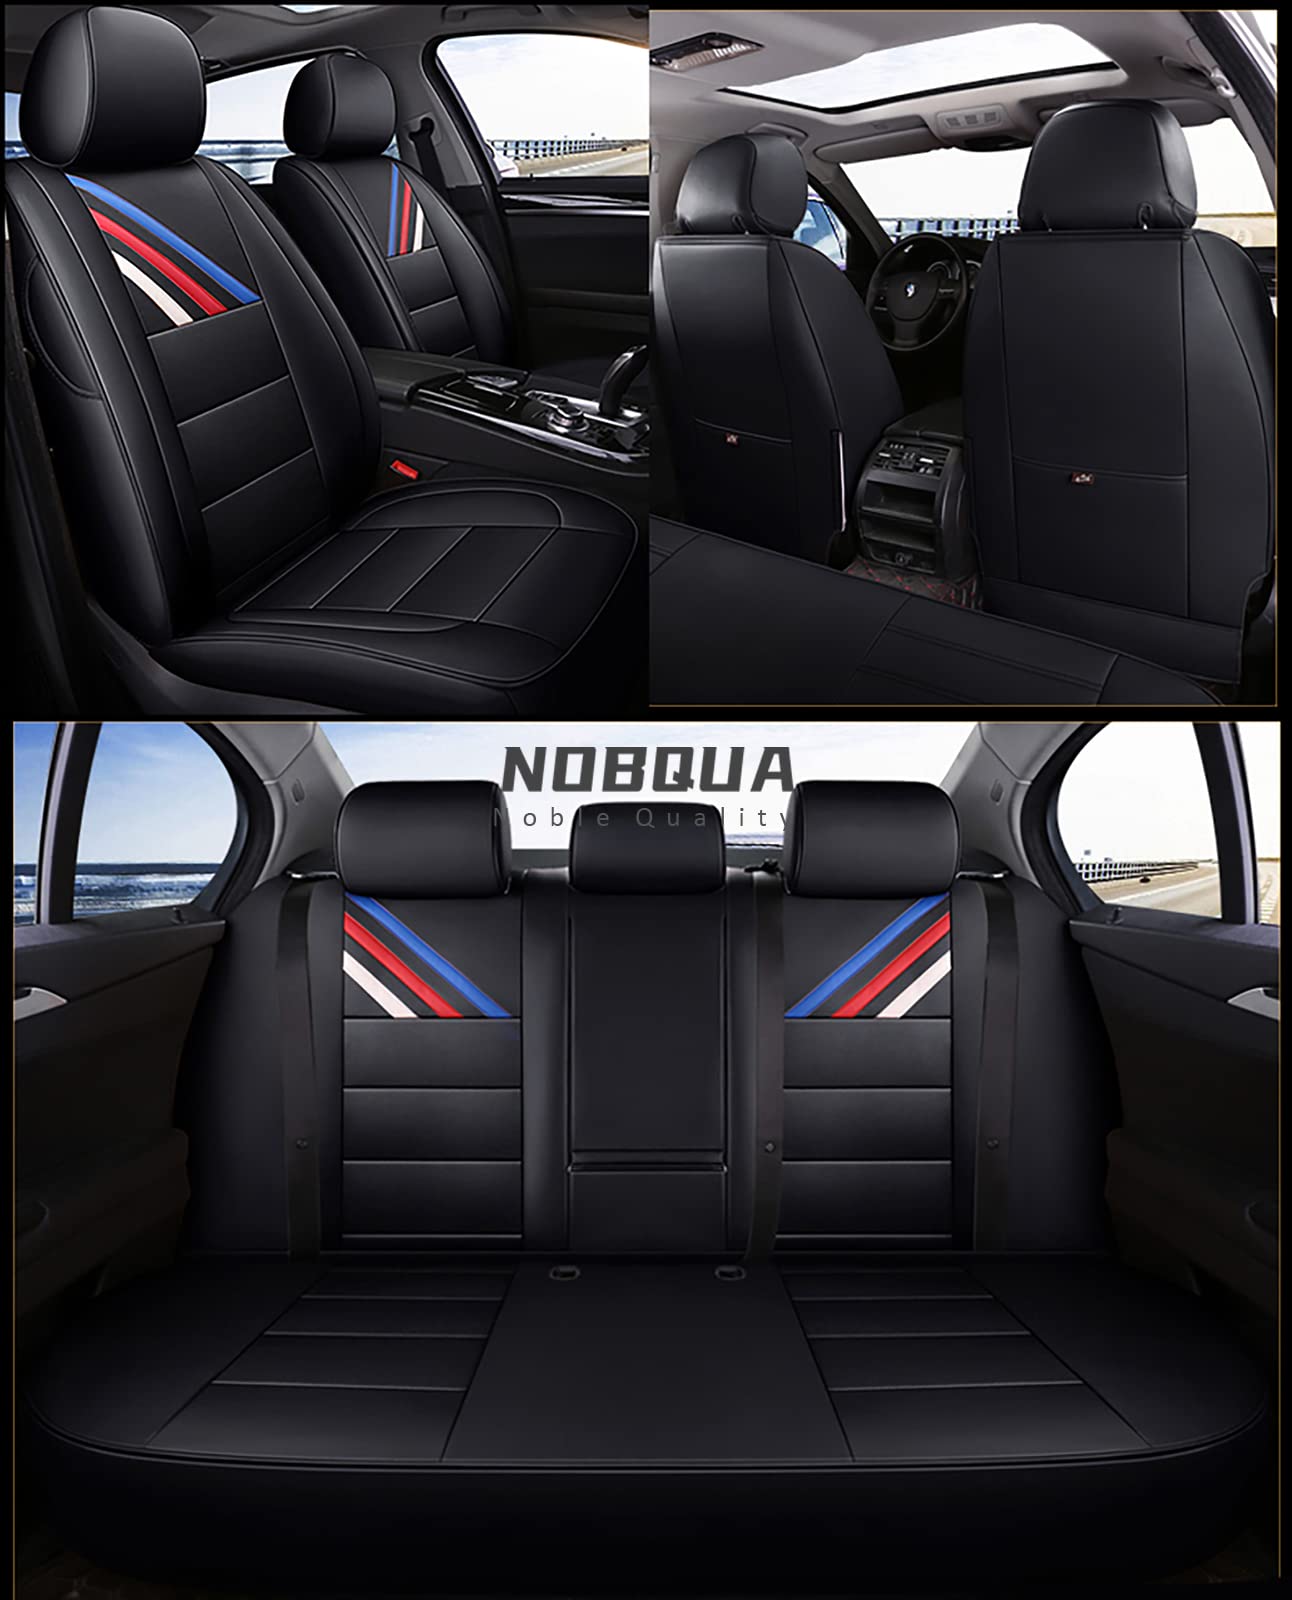 NOBQUA Sitzbezüge Auto Autositzbezüge Universal Set für BMW E46 E90 E39 E60 E36 G30 E30 E34 E38 E53 F30 F10 E70 E87 E91 F20 E83 E84 E92 320I 520 Auto Zubehör von NOBQUA